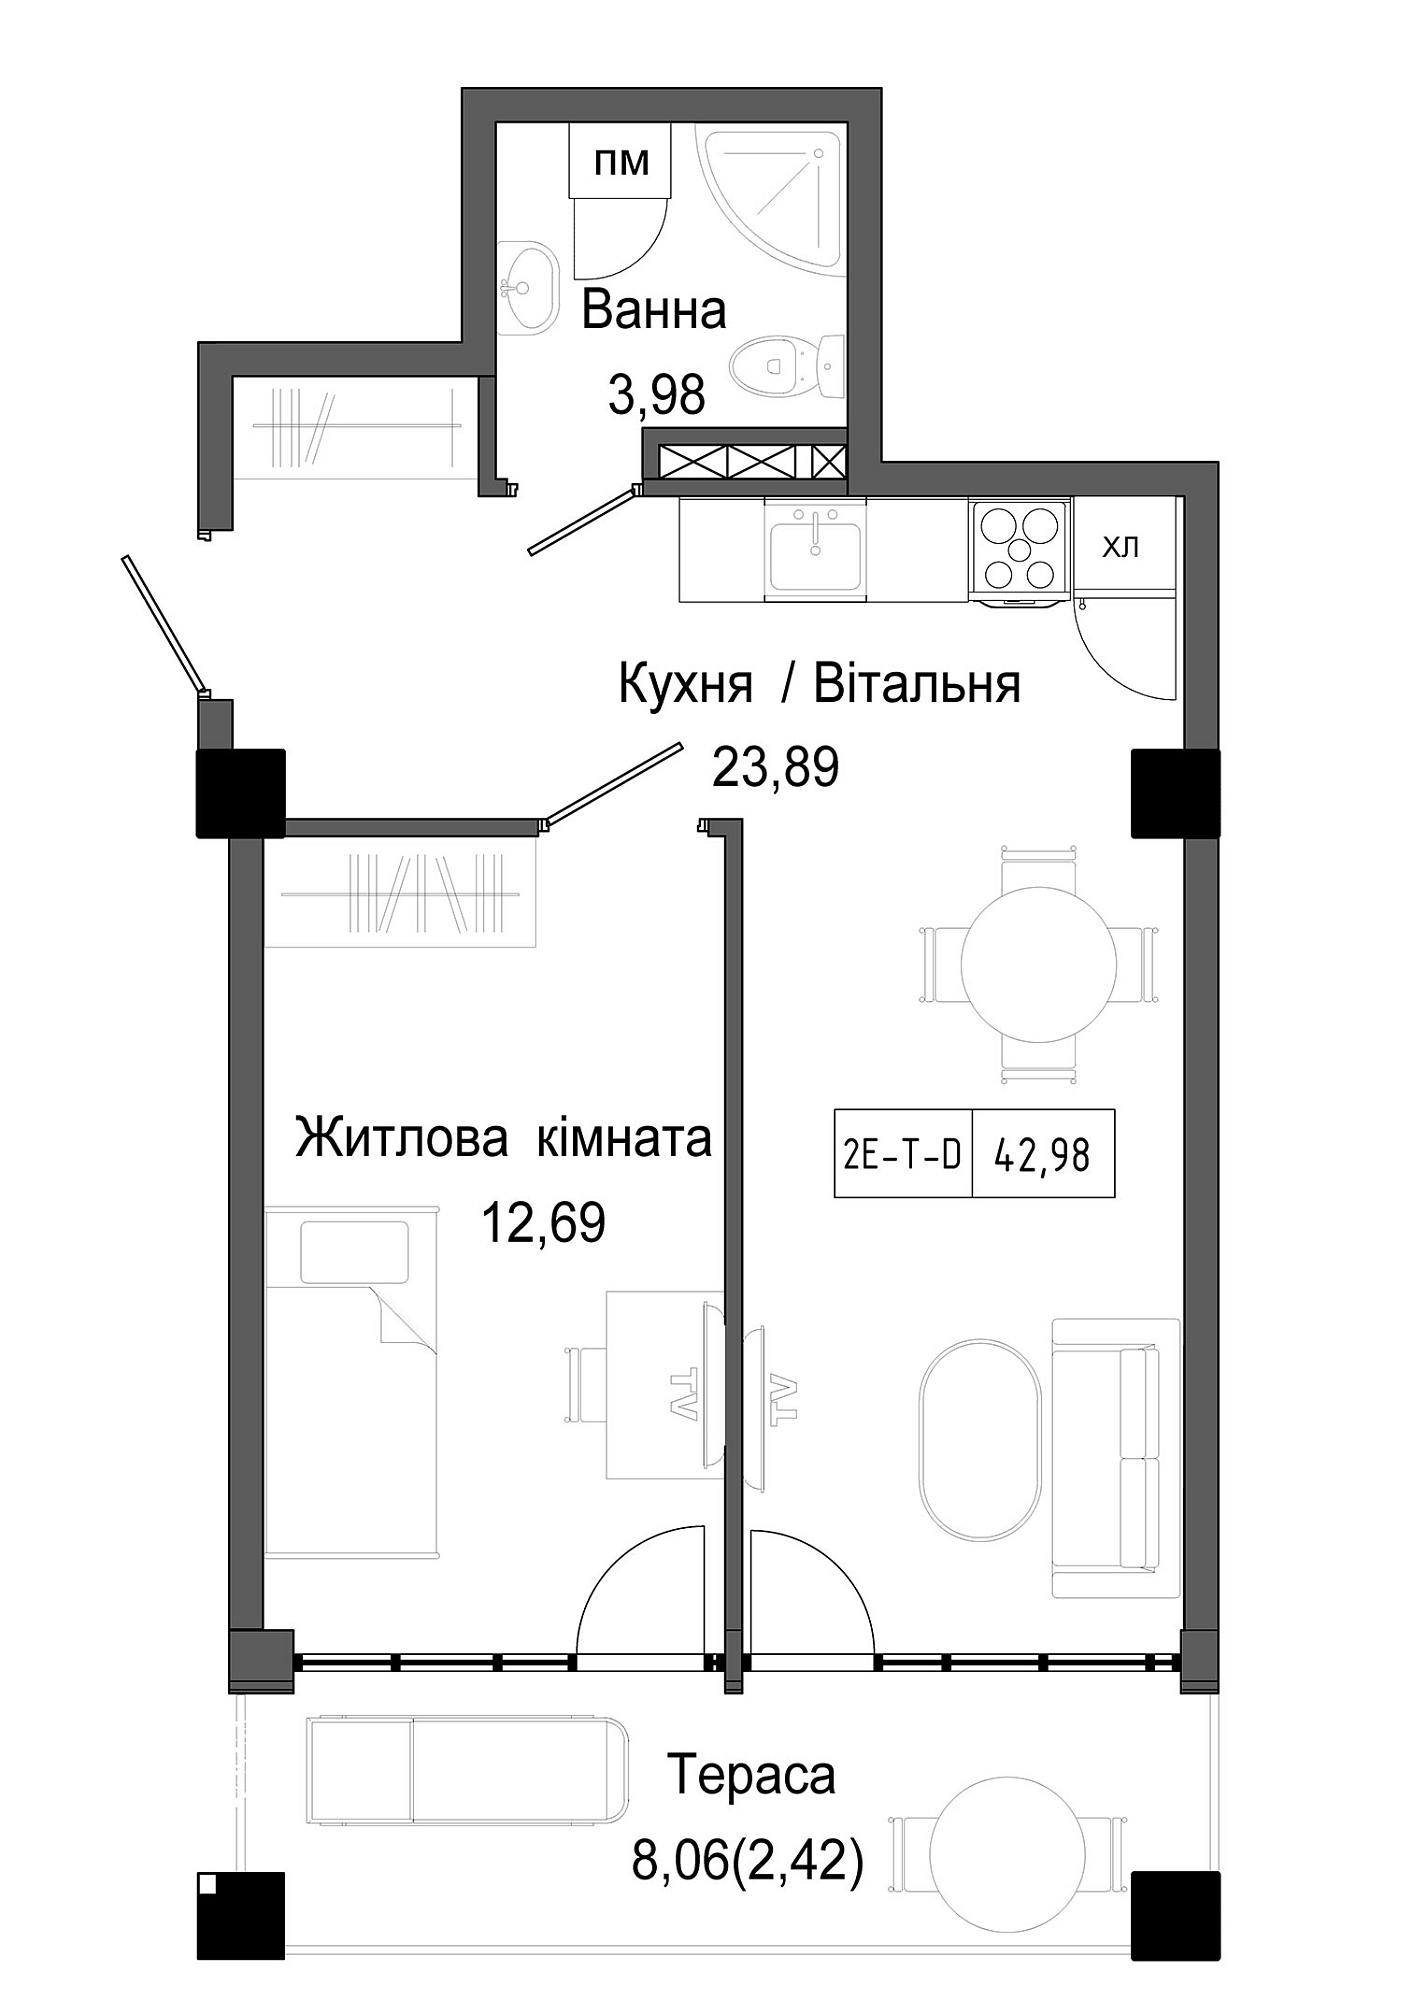 Планировка 1-к квартира площей 42.98м2, UM-006-01/0006.